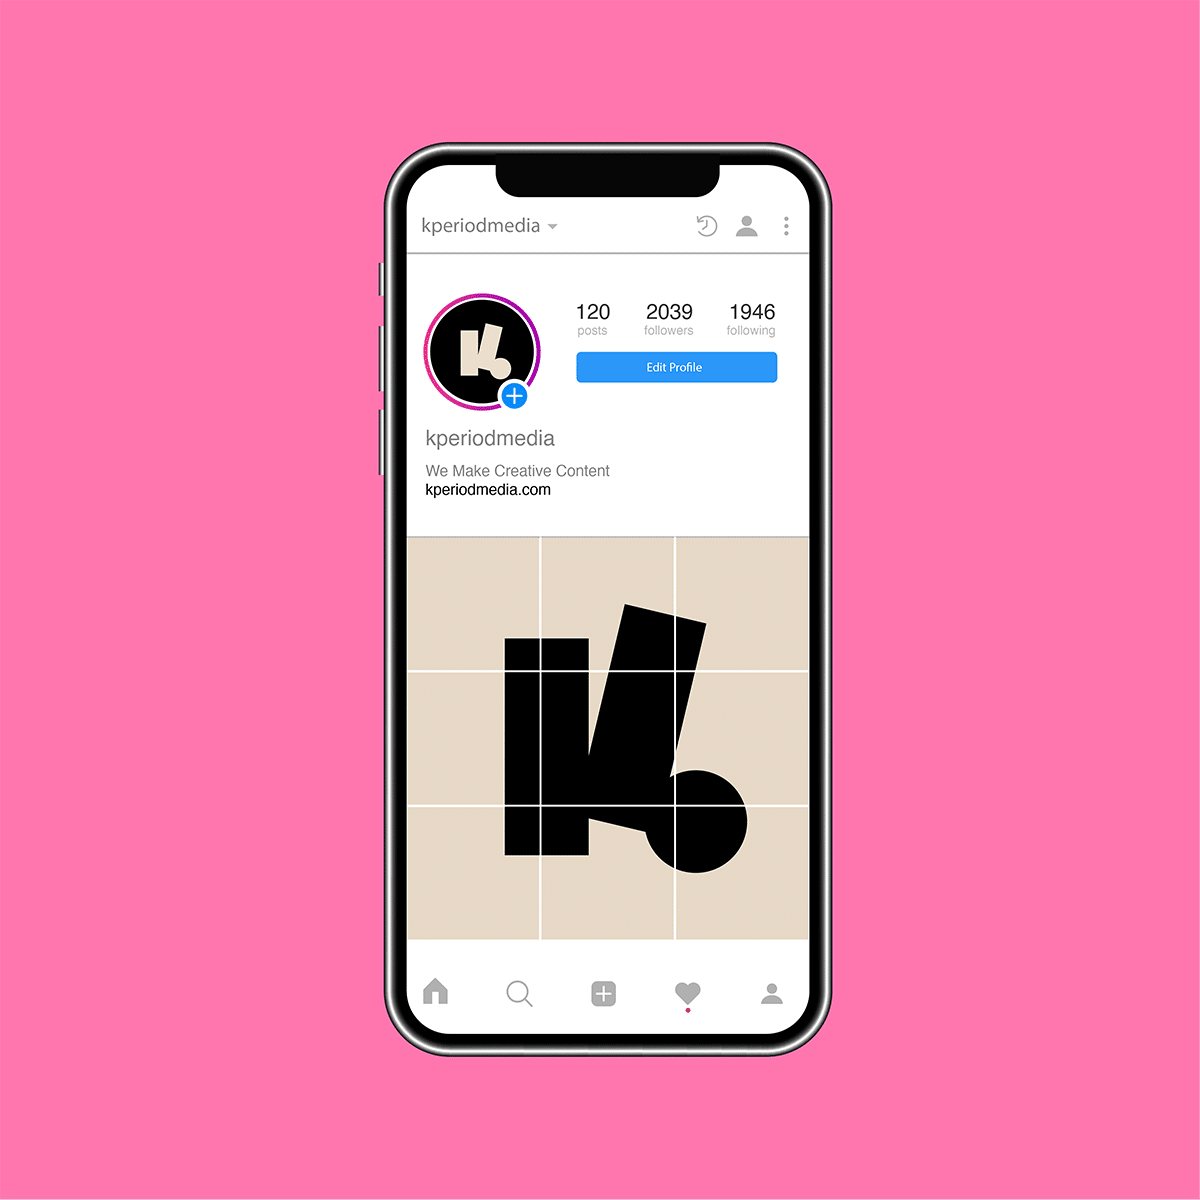 das logo als post in einem Instagram feed